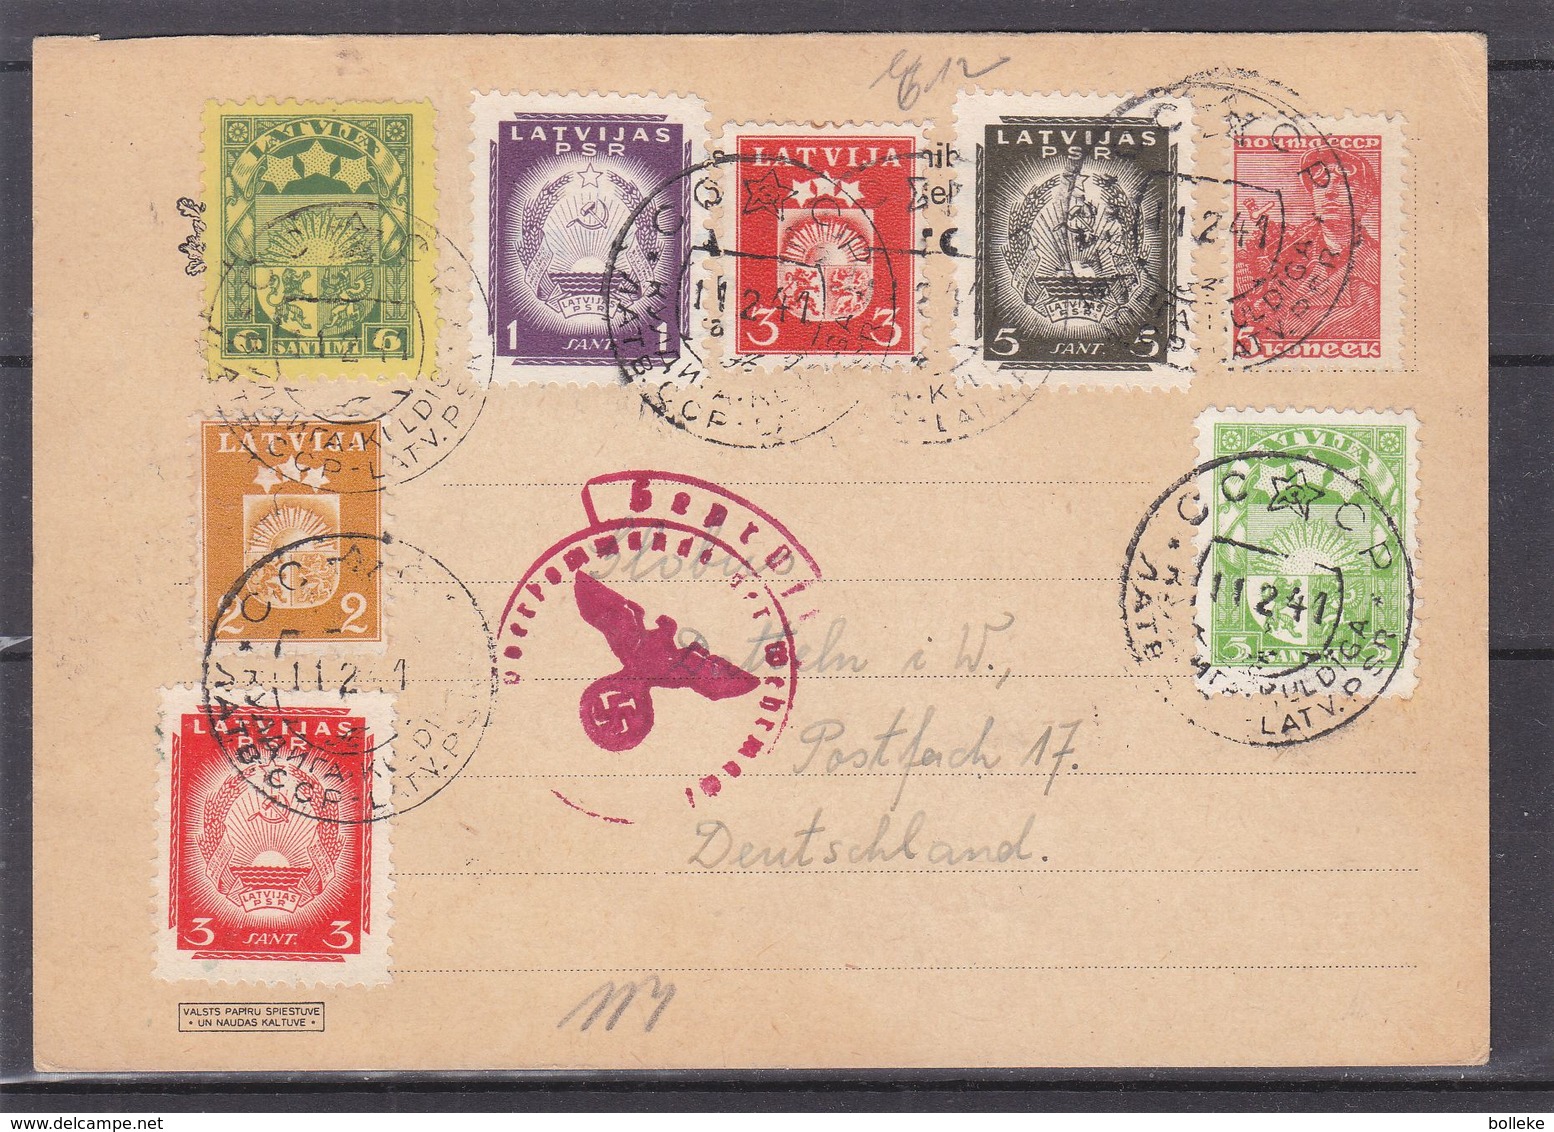 Lettonie - Carte Postale De 1941 - Oblit Kuldiga - Exp Vers Datteln - Avec Censure - Avec Timbres Russes Et Lettoniens - Latvia